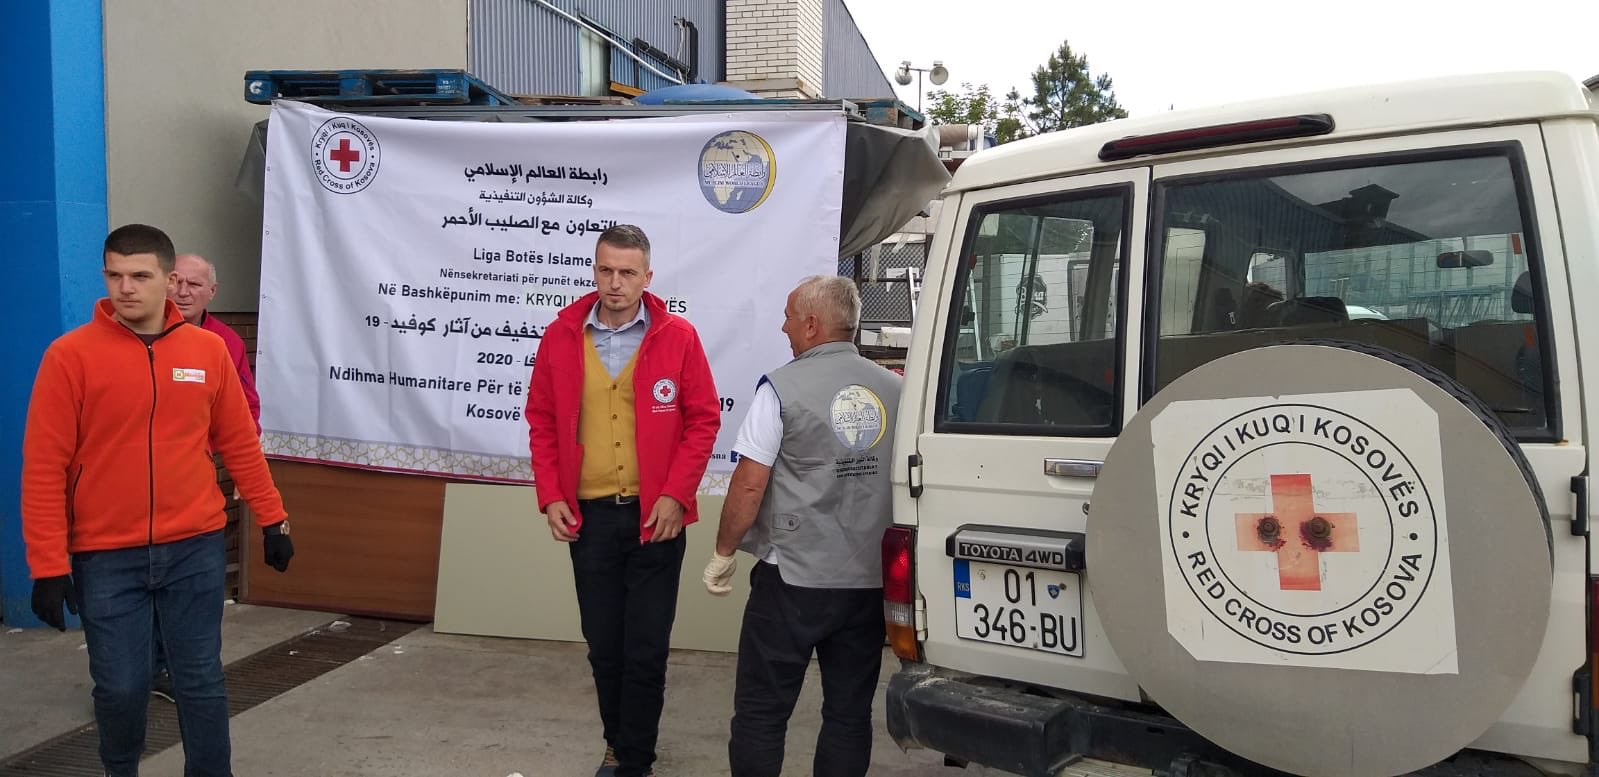 رابطہ عالم اسلامی کی طرف سے کوسوو میں ریڈ کراس کے تعاون کے ساتھ غذائی سامان کی تقسیم